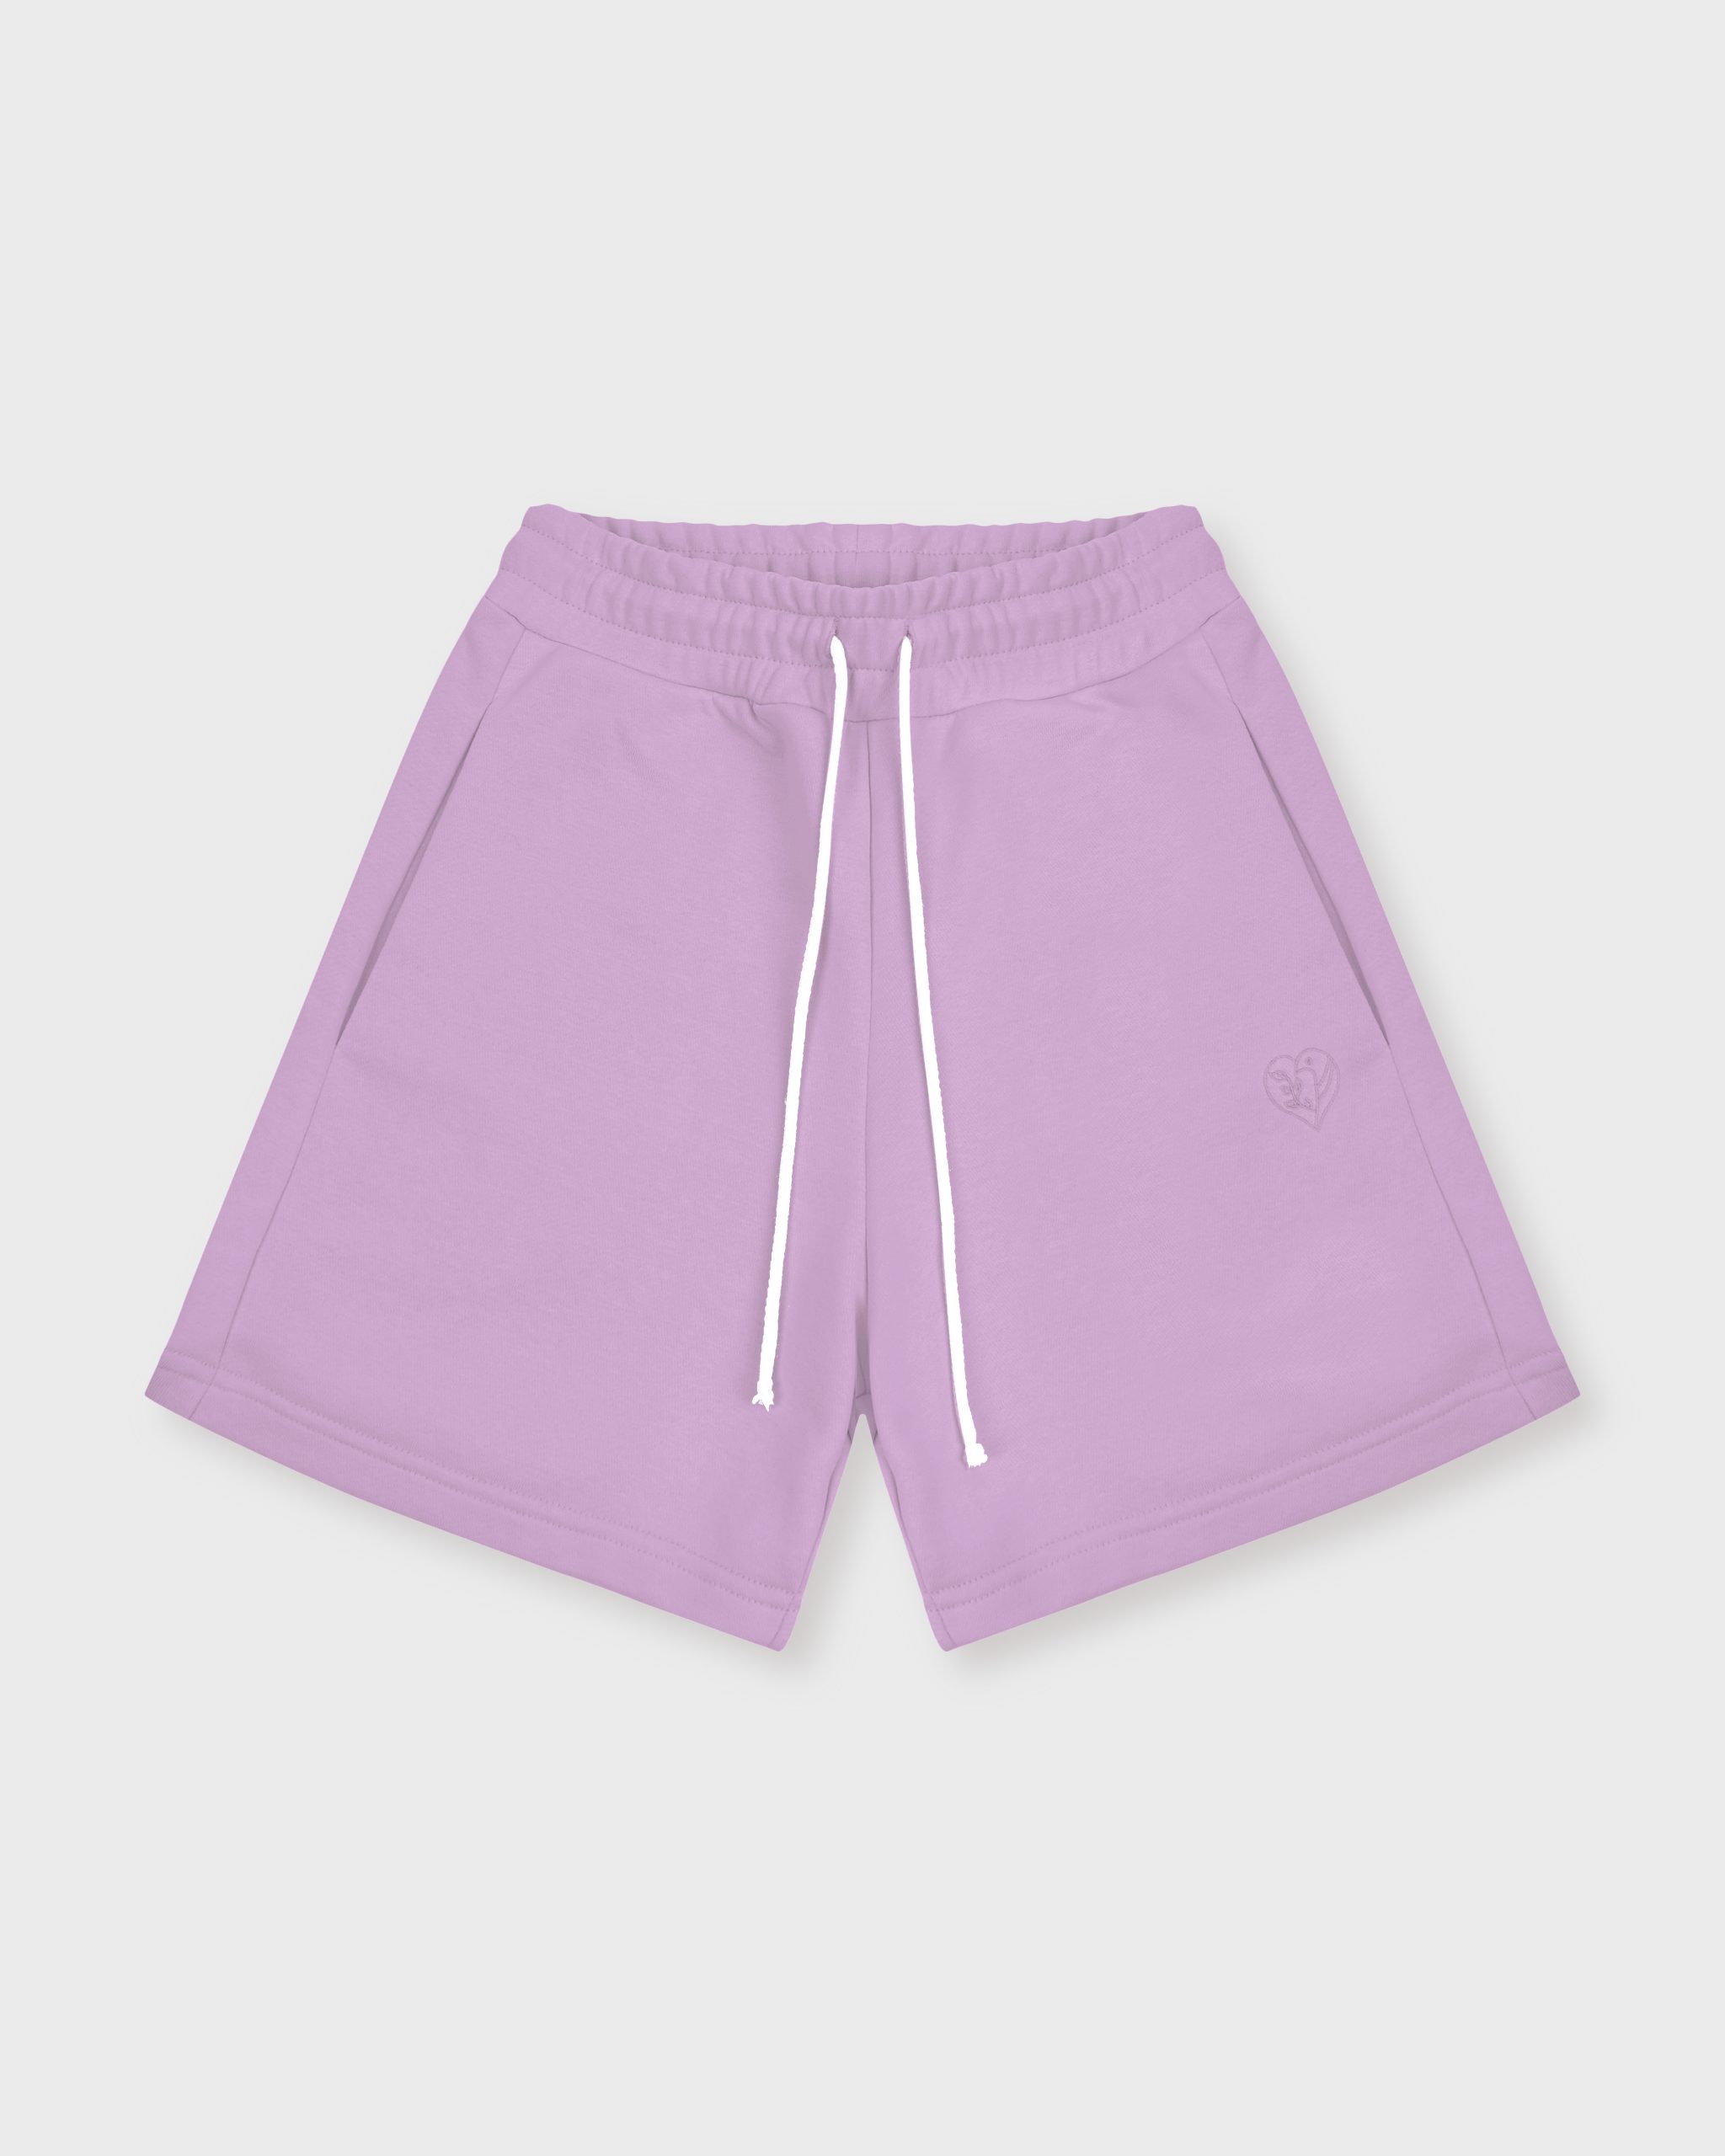 Повседневные шорты женские Atmosphere Summer vibes фиолетовые XL